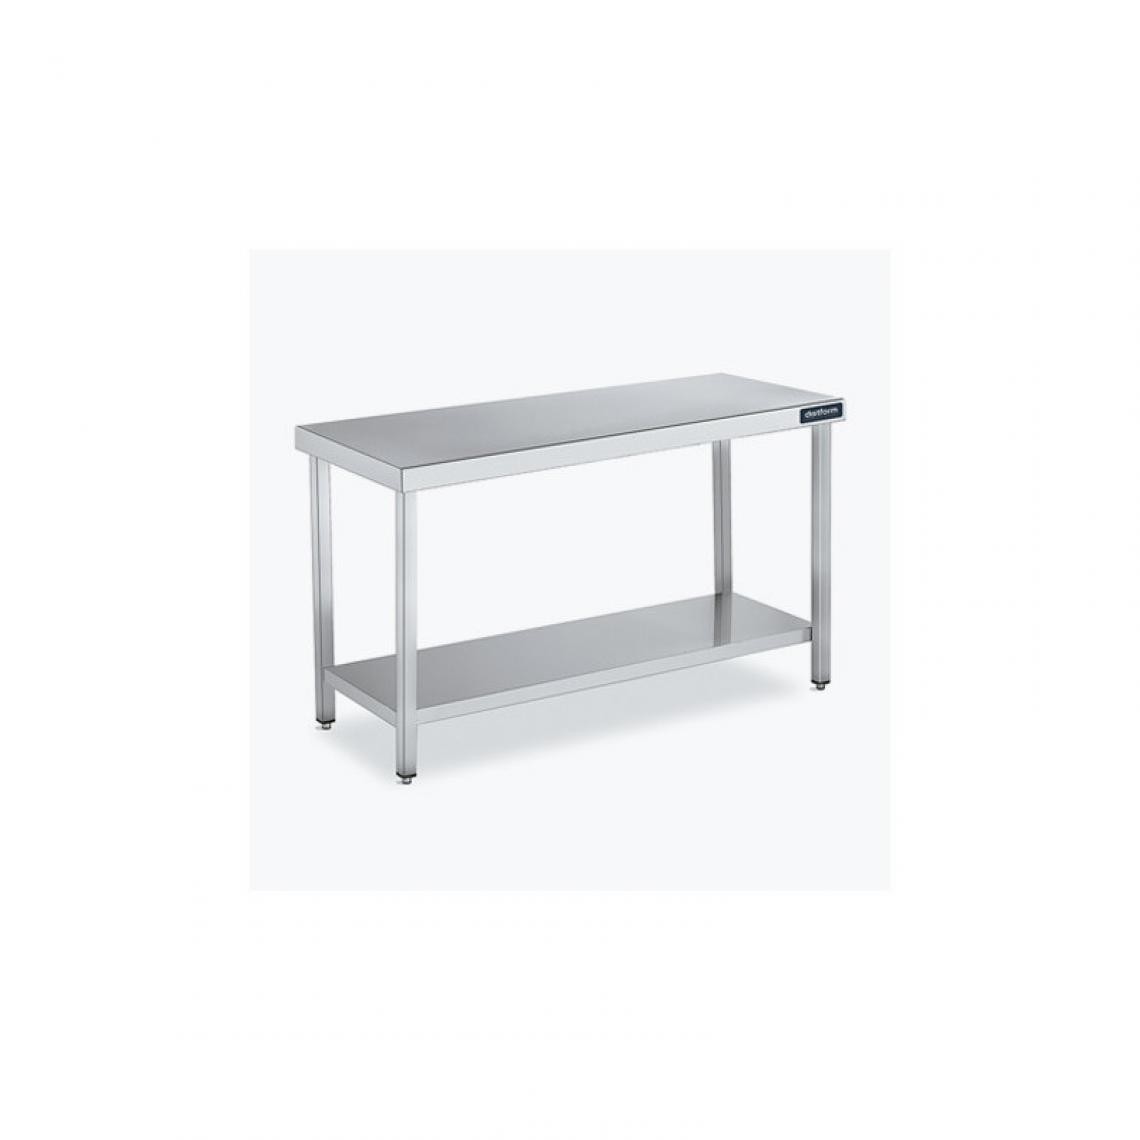 DISTFORM - Table Centrale 600x700 avec Étagère - Distform - Inox 18/10700x700x850mm - Tables à manger